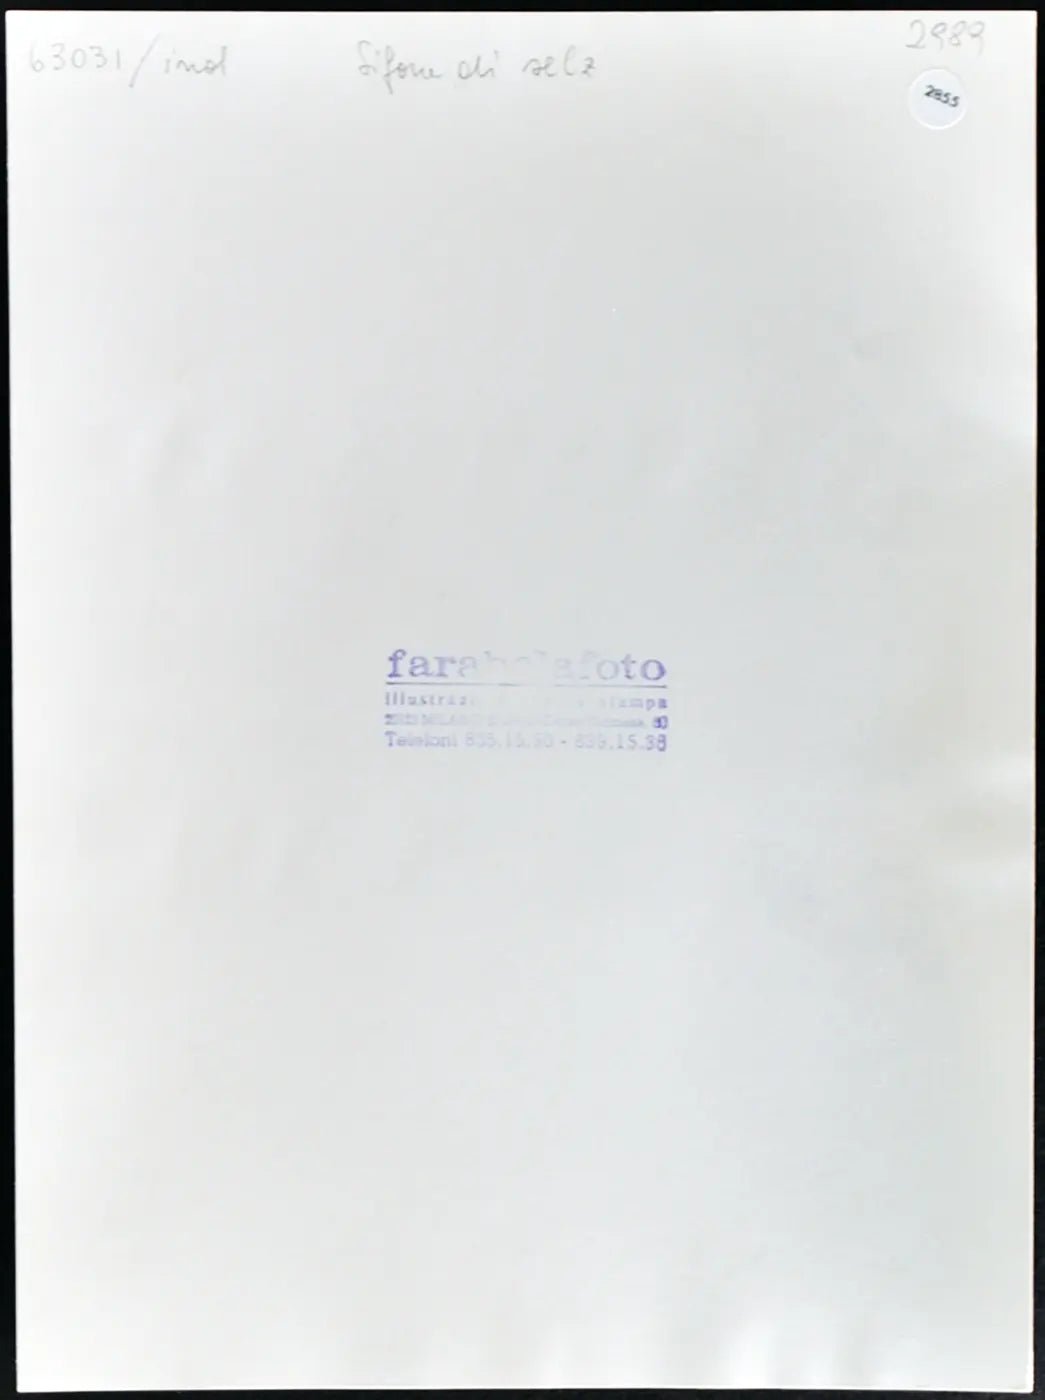 Sifone di selz anni 60 Ft 2855 - Stampa 24x18 cm - Farabola Stampa ai sali d'argento